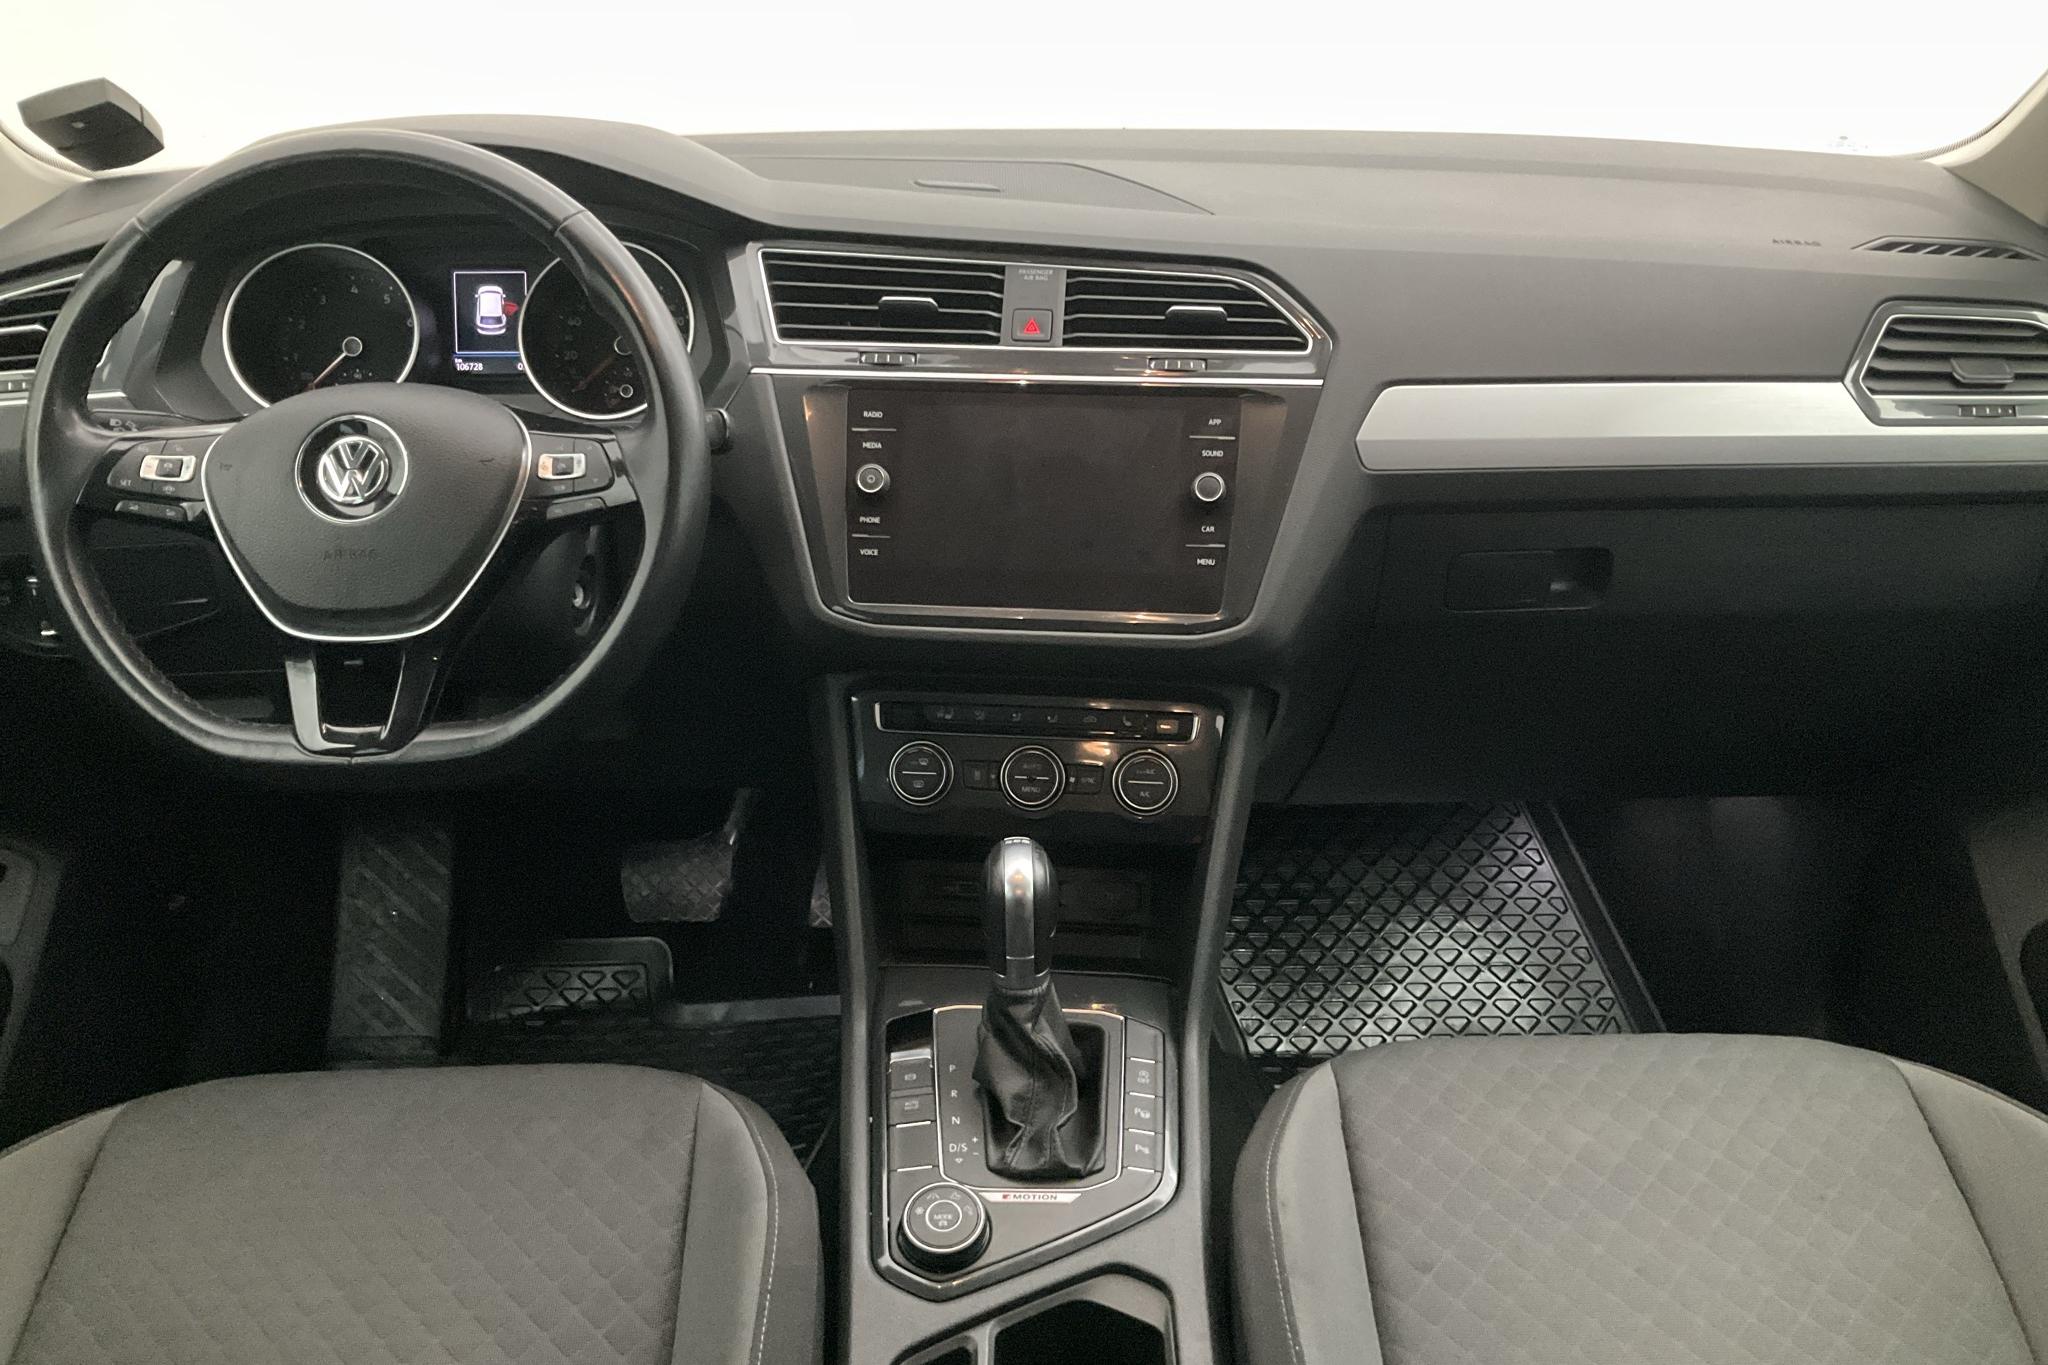 VW Tiguan 2.0 TSI 4MOTION (190hk) - 10 673 mil - Automat - svart - 2019